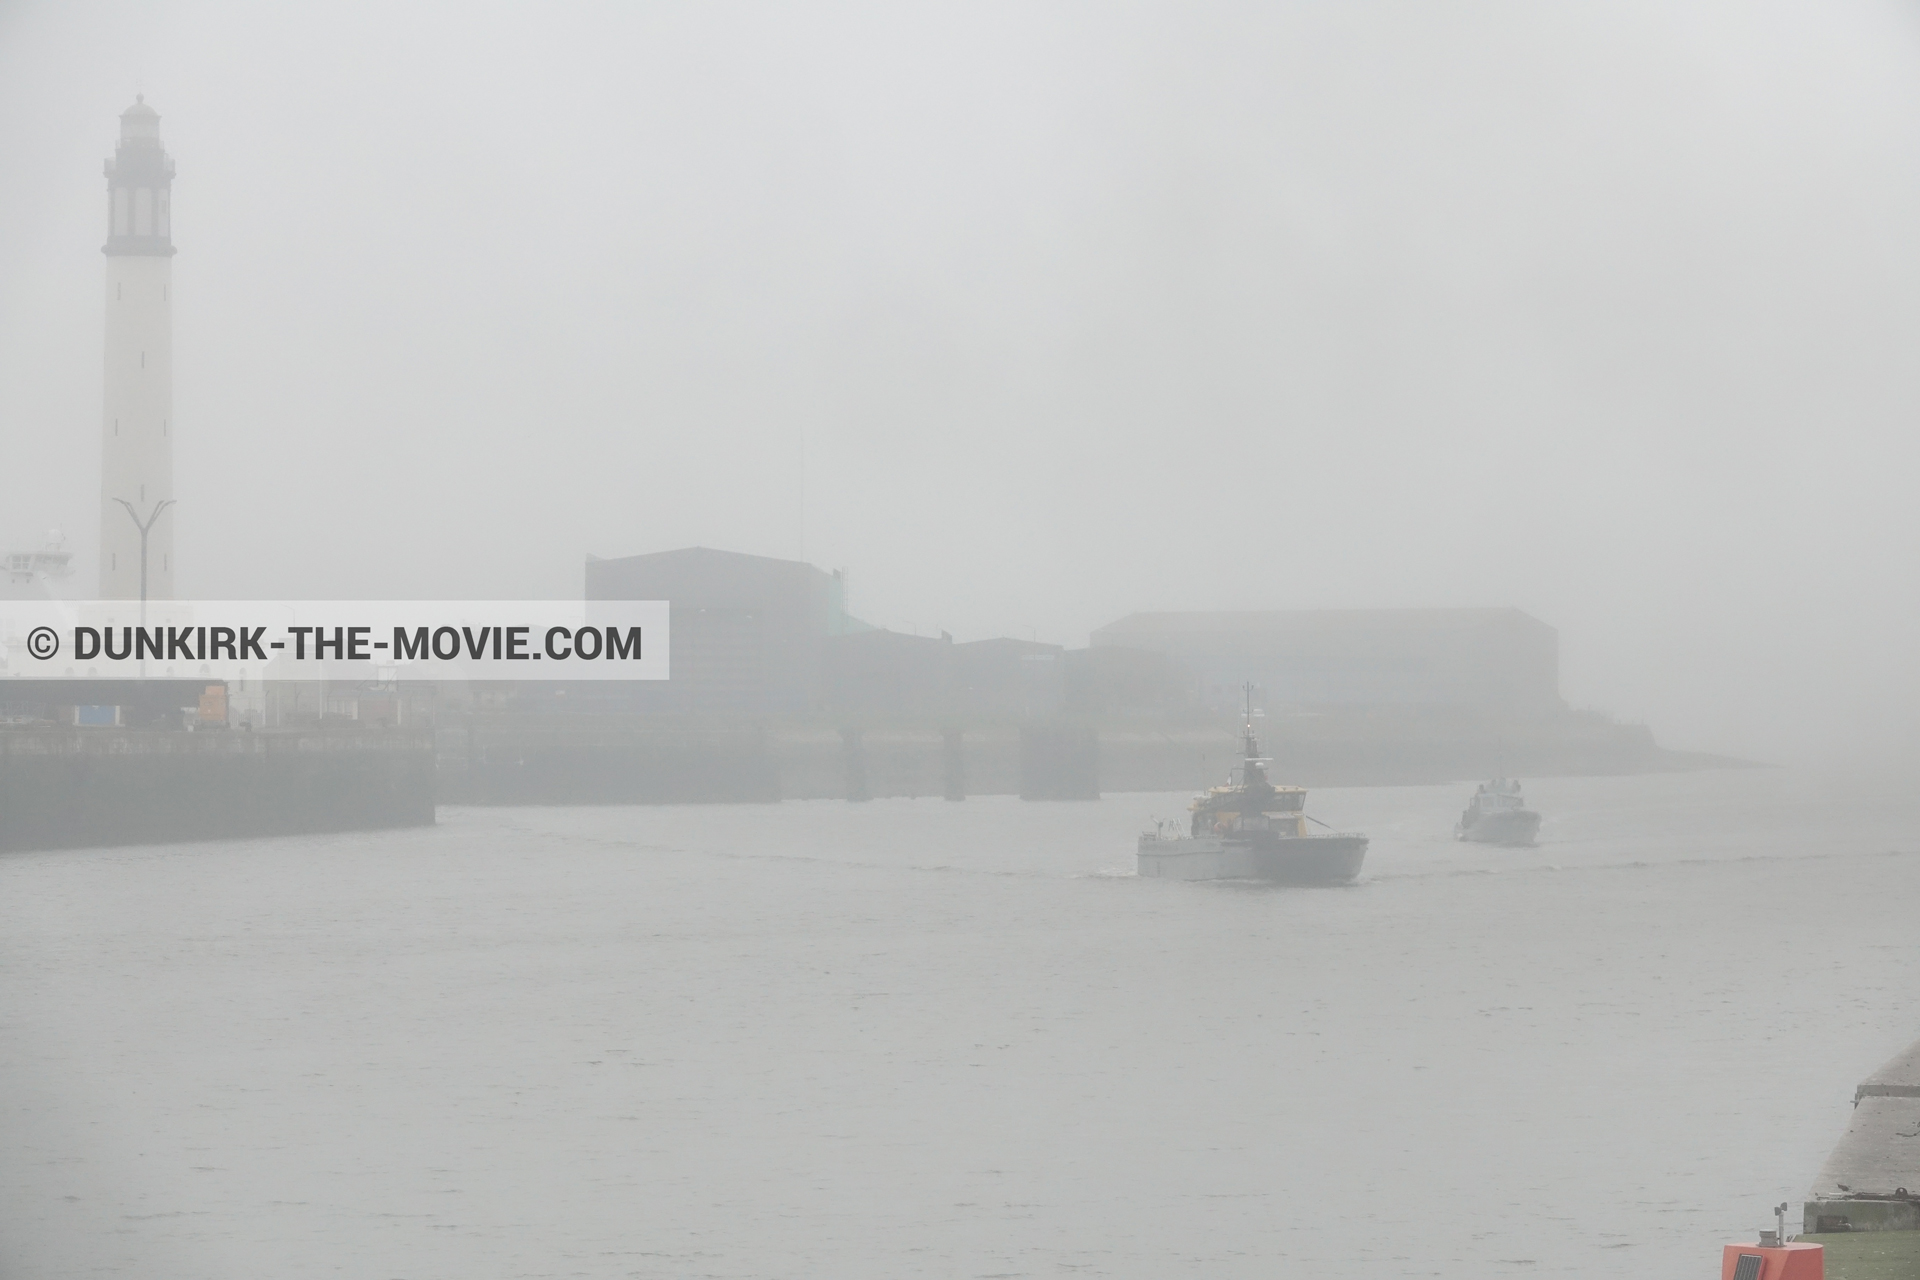 Fotos con cielo gris, Ocean Wind 4, faro de Dunkerque,  durante el rodaje de la película Dunkerque de Nolan